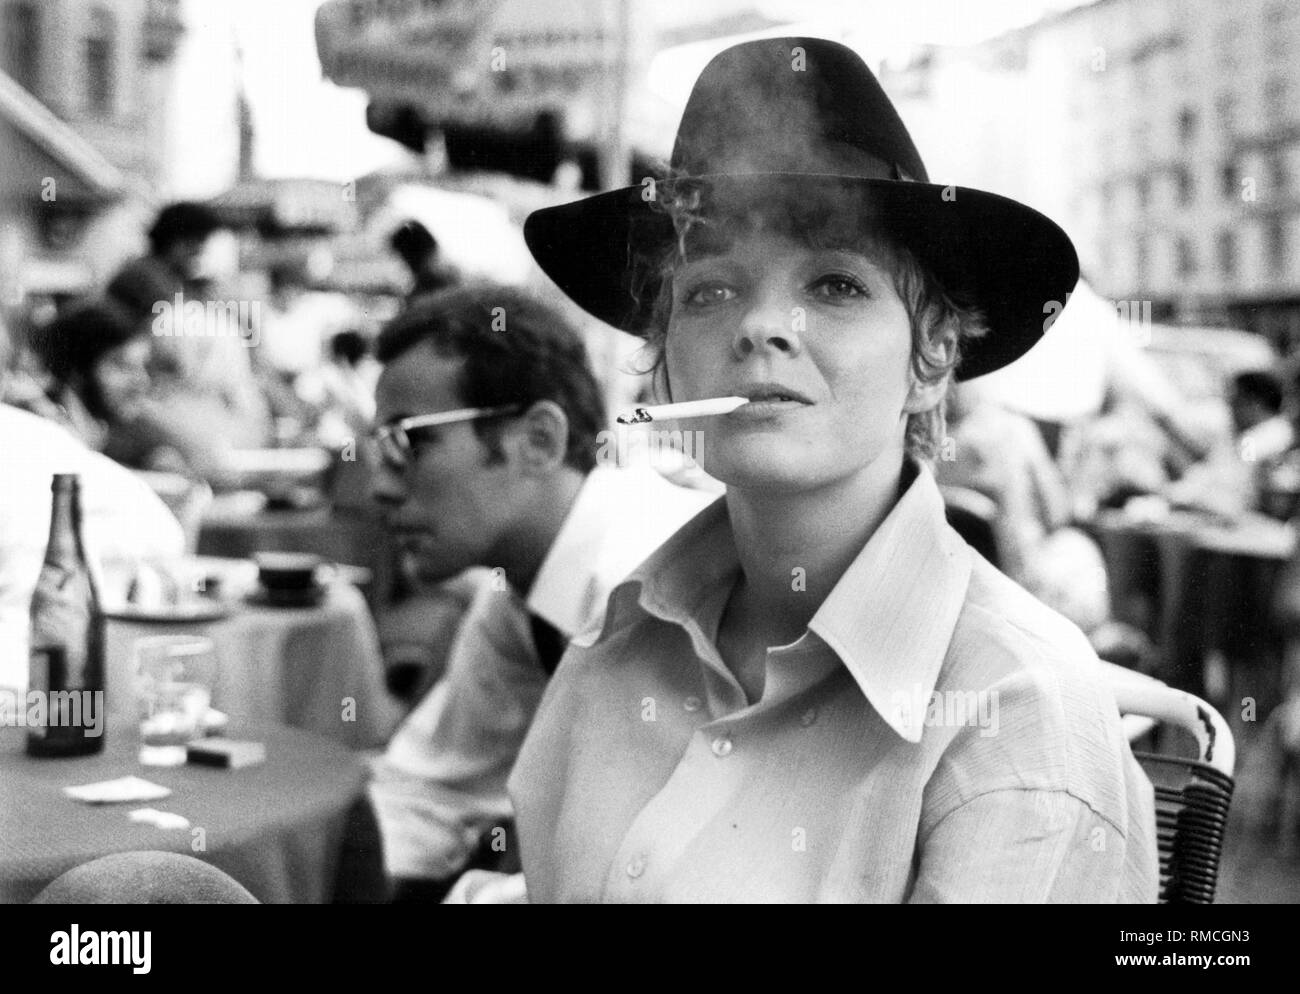 Gila von Weitershausen (né en 1944), une actrice allemande. La photo a été prise dans un café de Schwabing à Munich. Banque D'Images